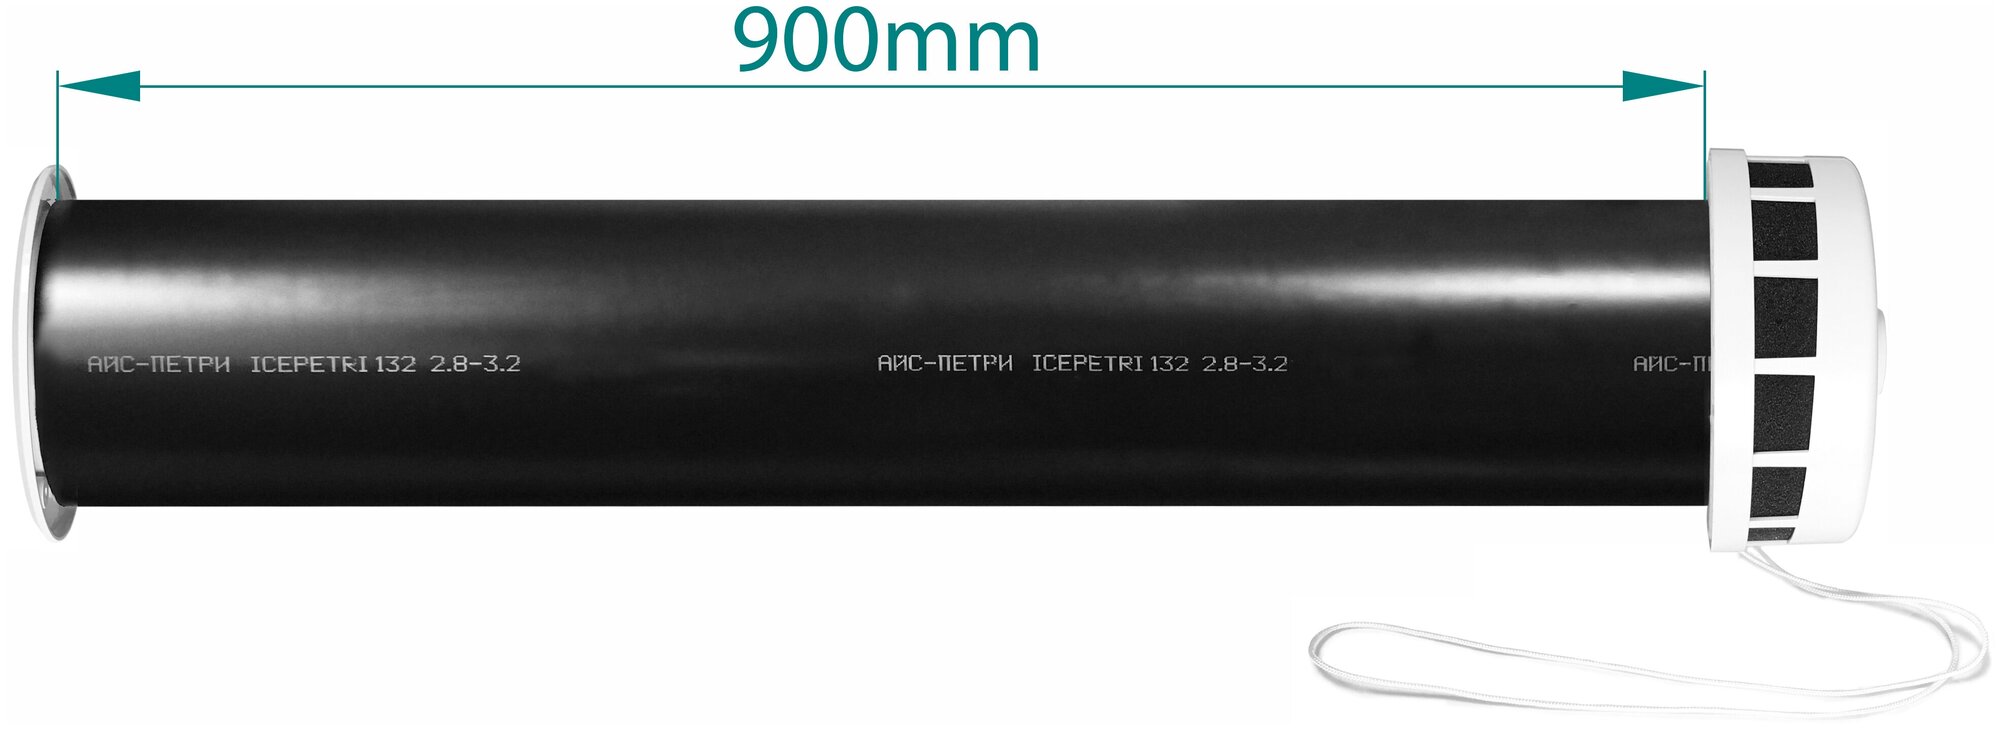 Приточный клапан КИВ-125 icepetri 900мм с к. базальтом и ivory ASA-пластиковой реш. в фирменной коробке - фотография № 3